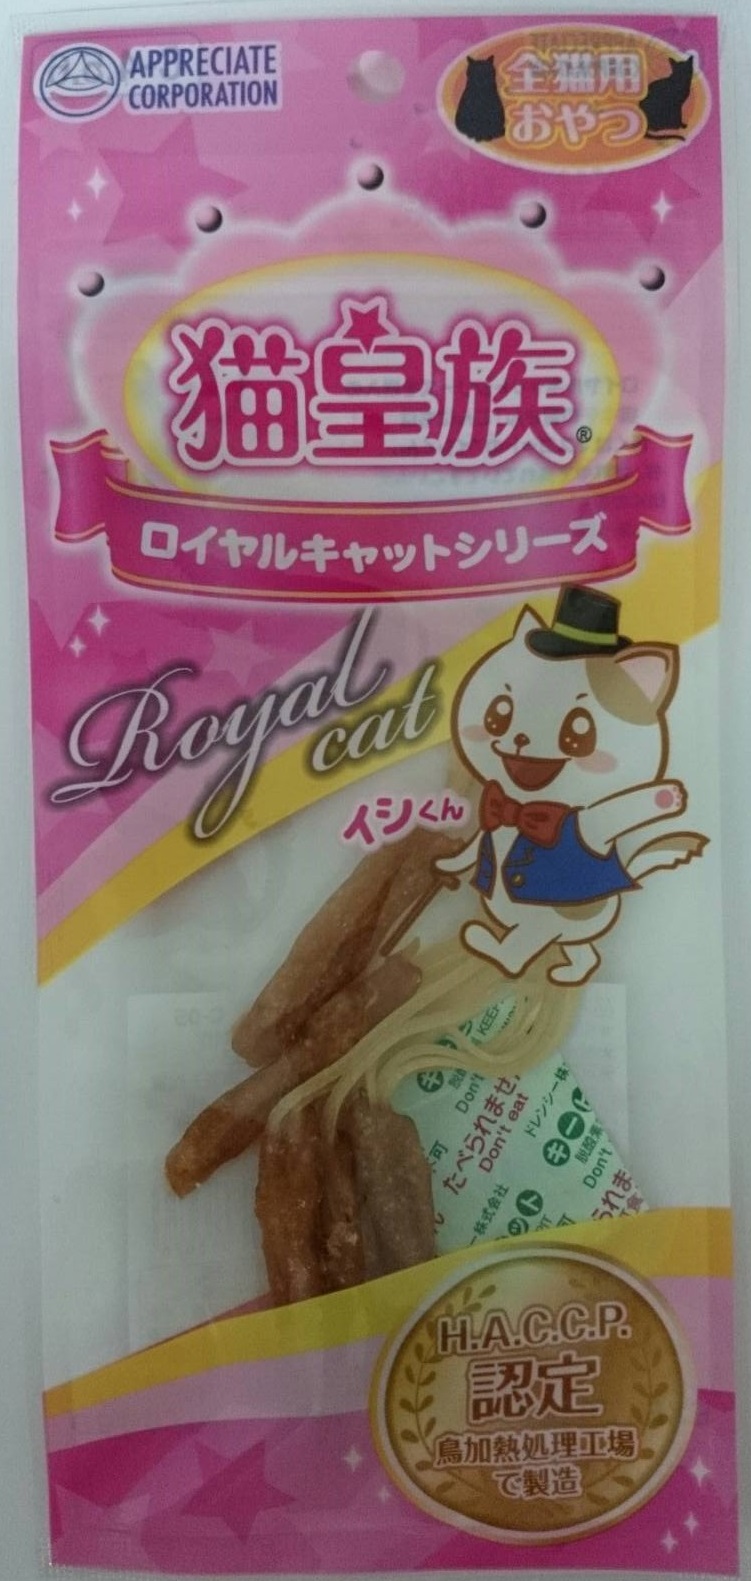 貓皇族®愛貓零食-雞肉玩具(原味)
Cat treat-chicken toy